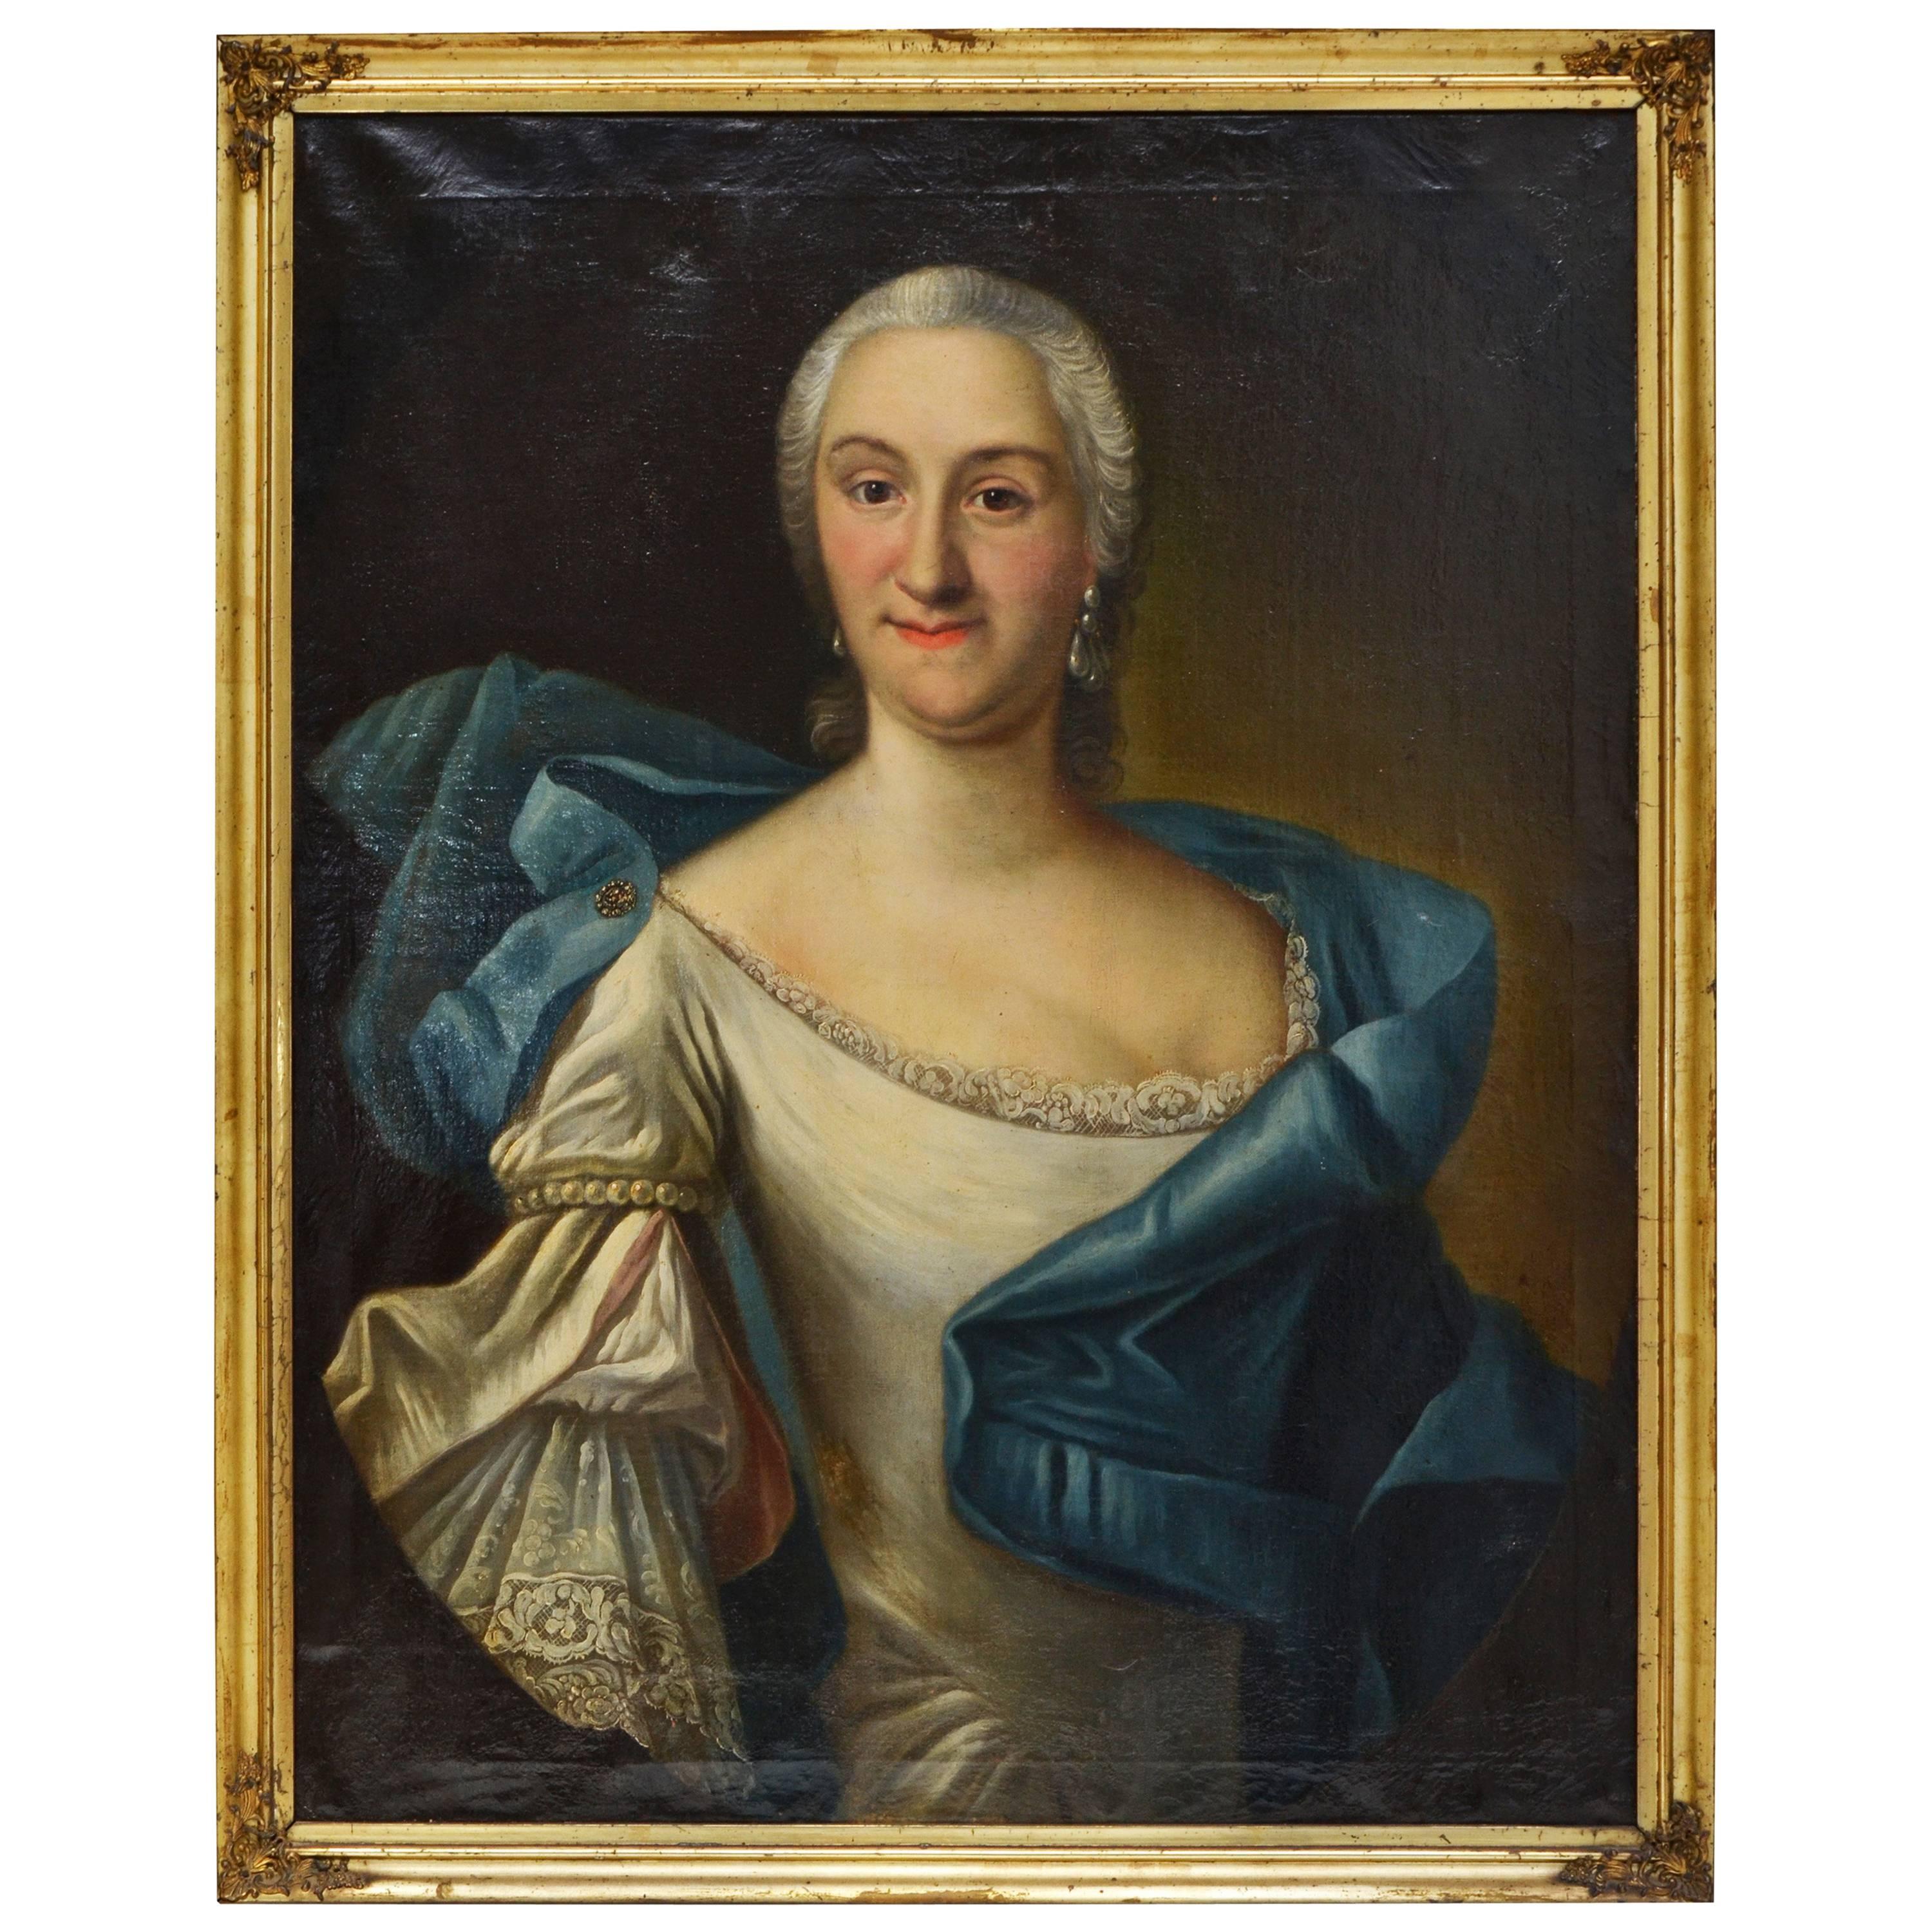 Portrait of a Lady by A. Sadeler